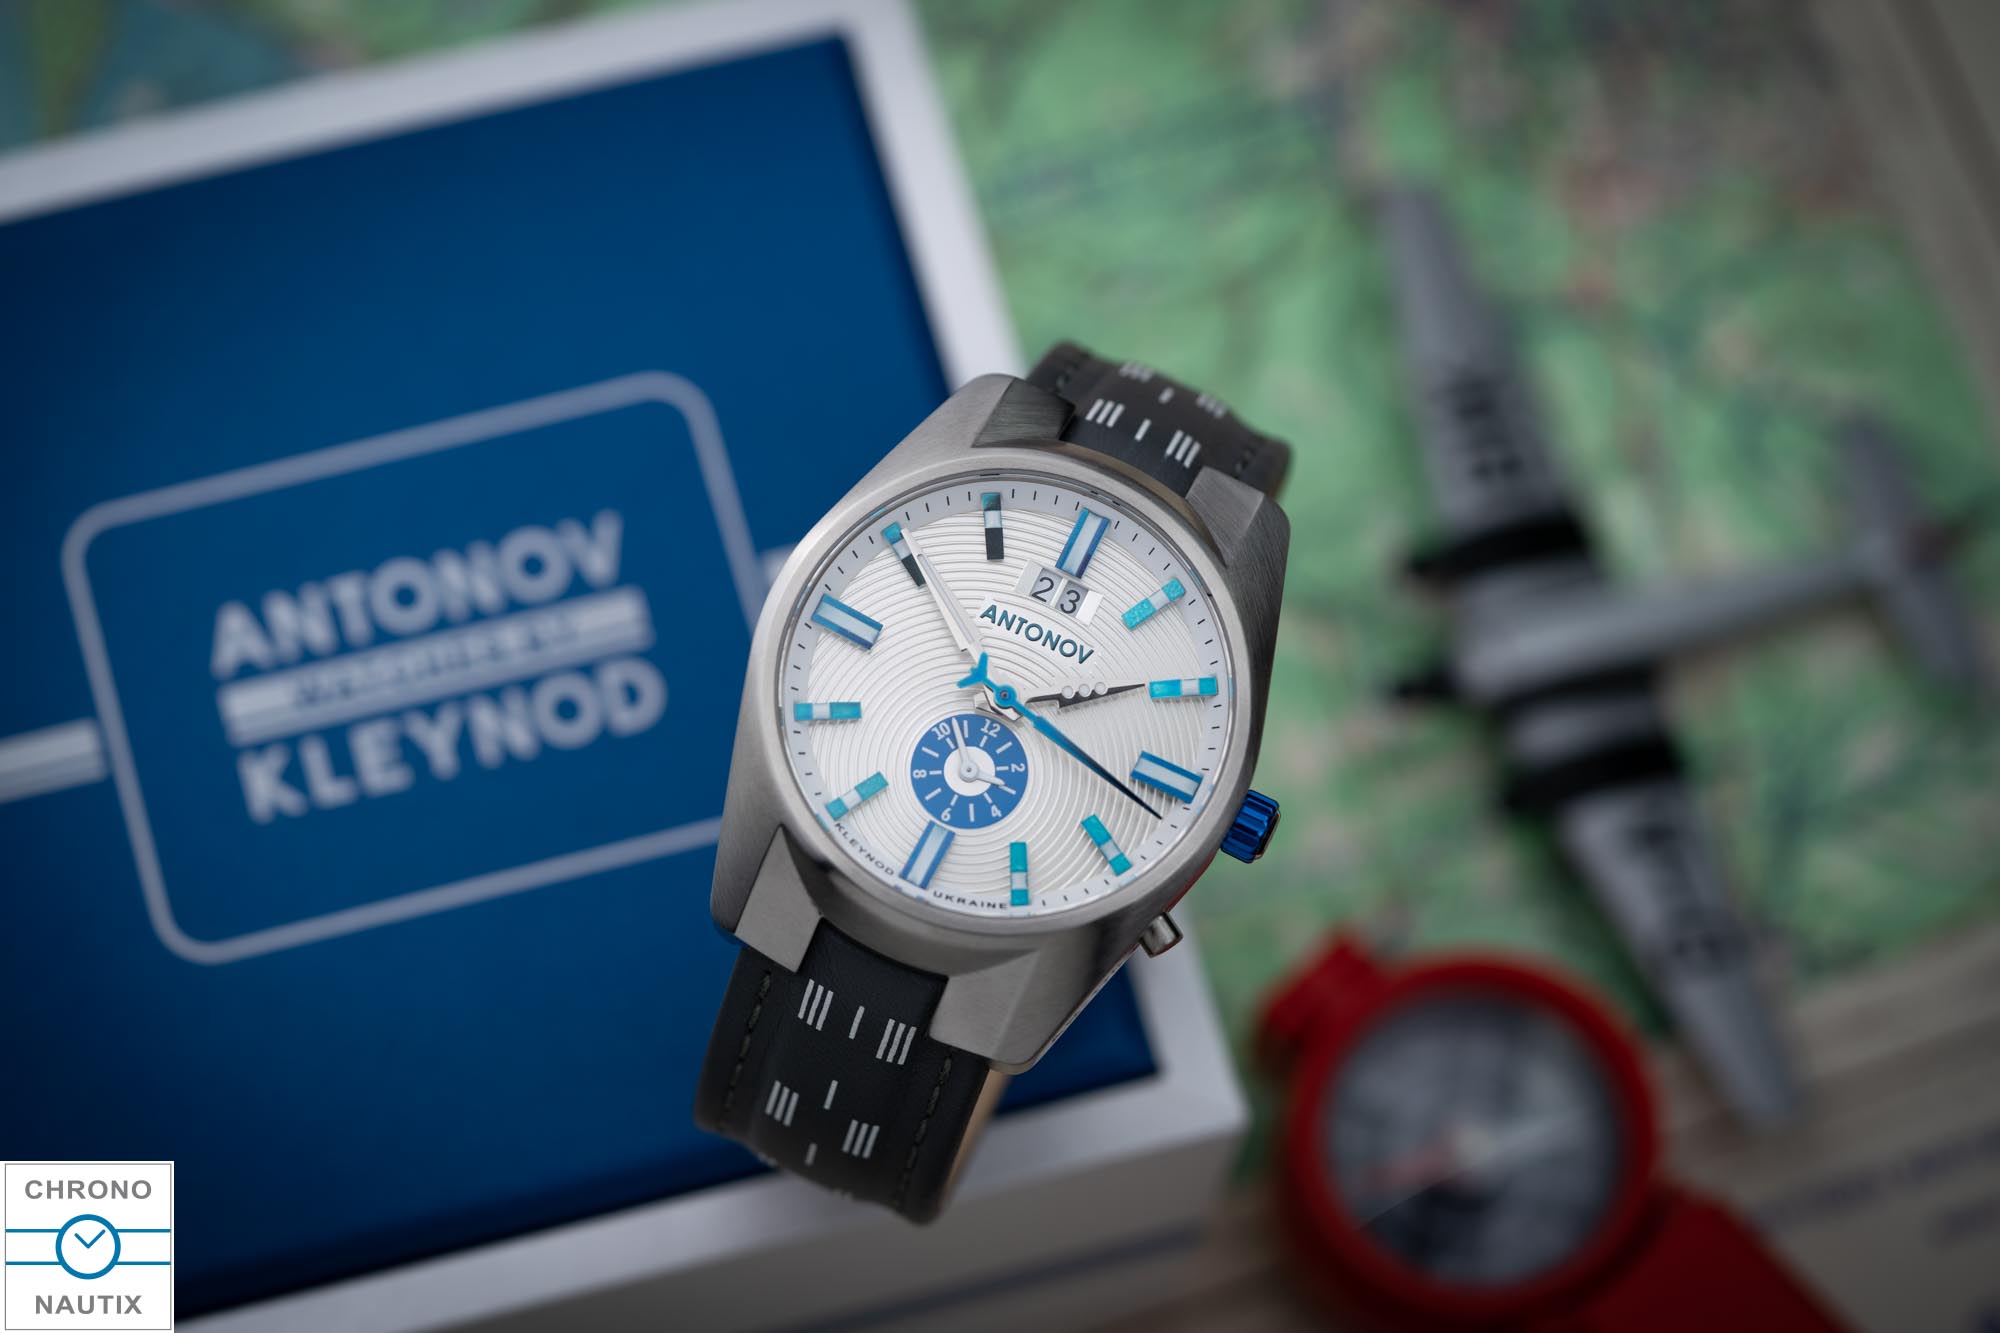 Kleynod Ukraine Antonov Kyiv Watch Factory Uhr 10